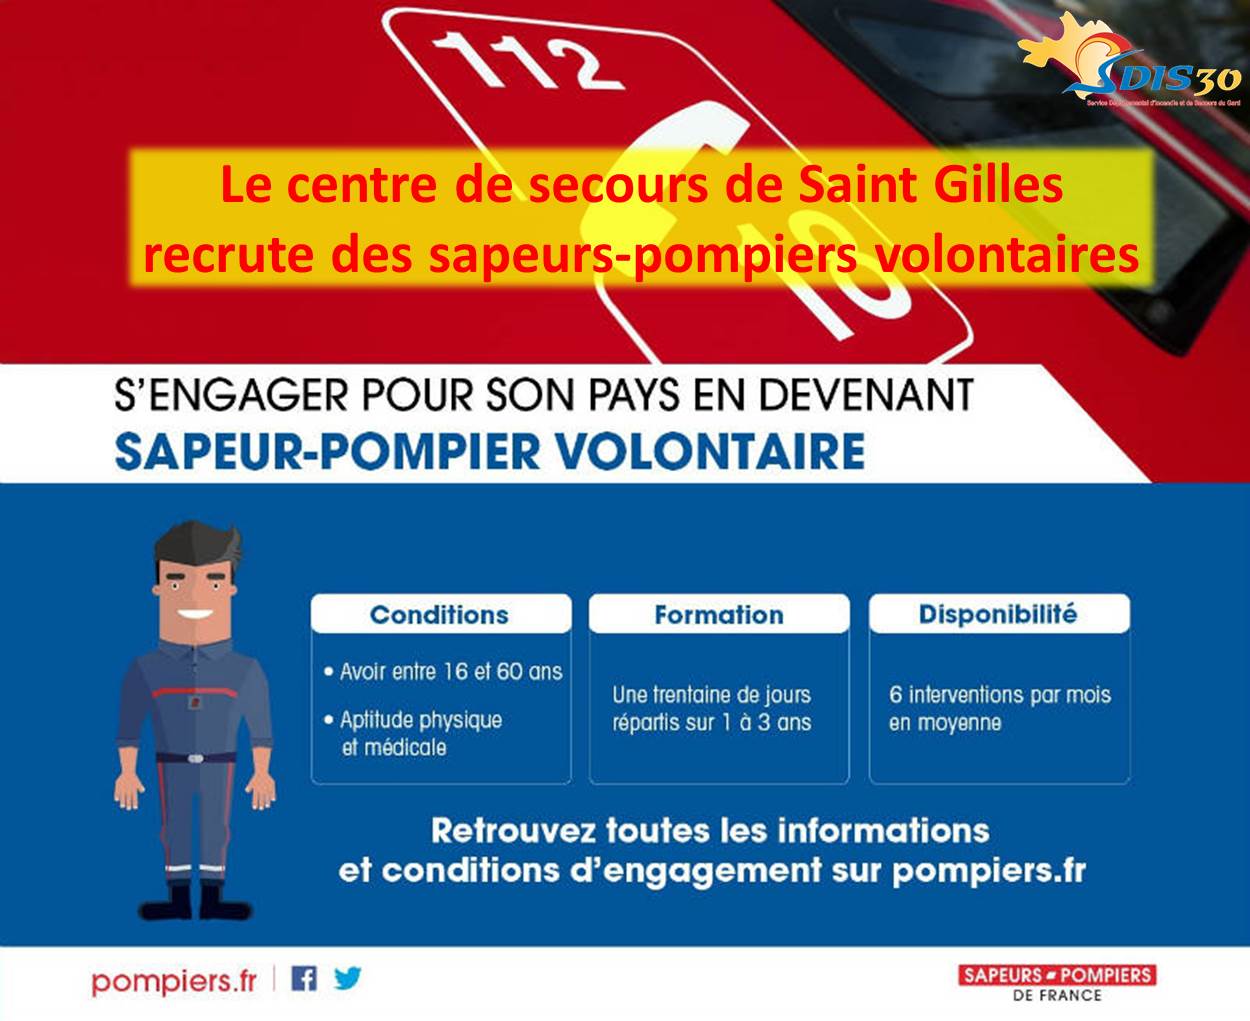 Le CIS St Gilles recrute des SPV